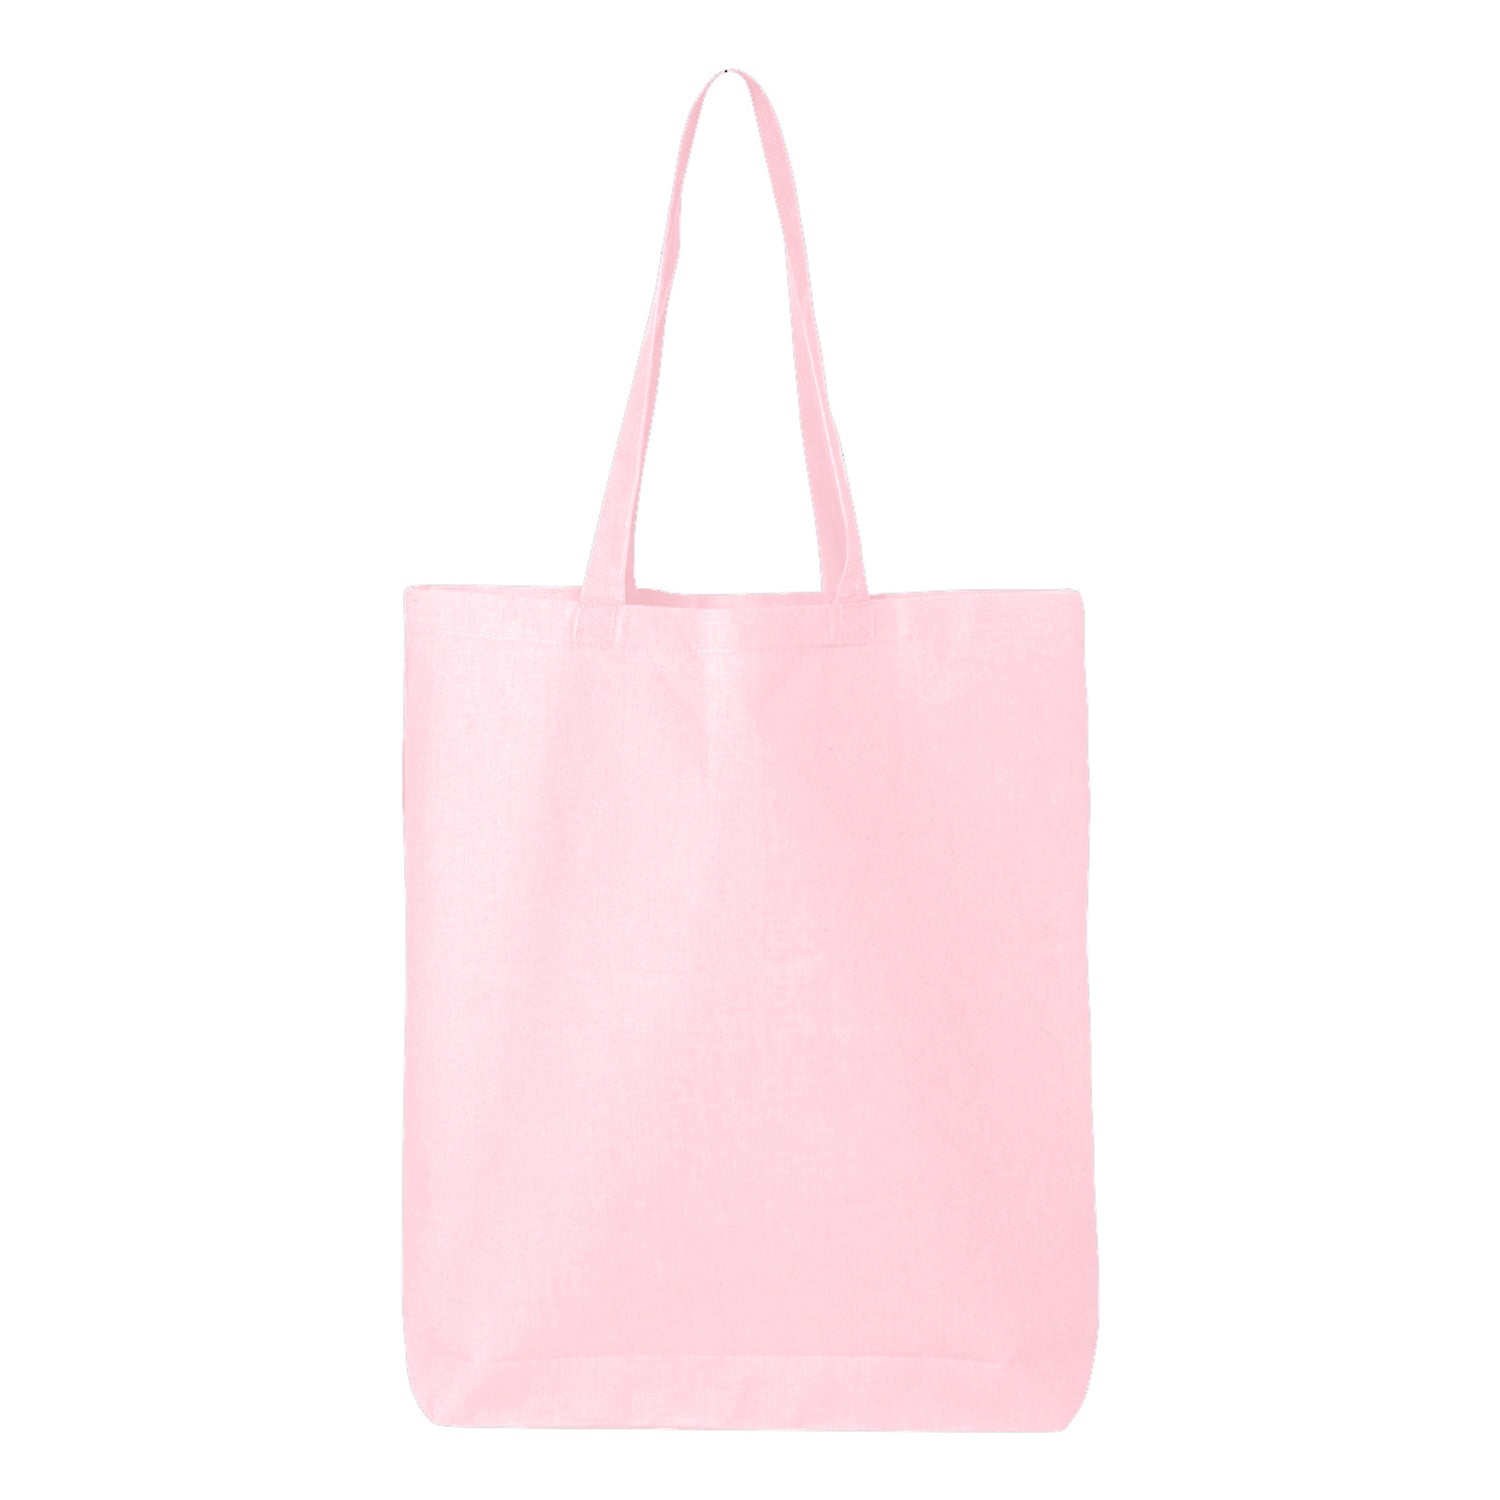 6 oz. co Cotton Tote Reusable Shopping Bag